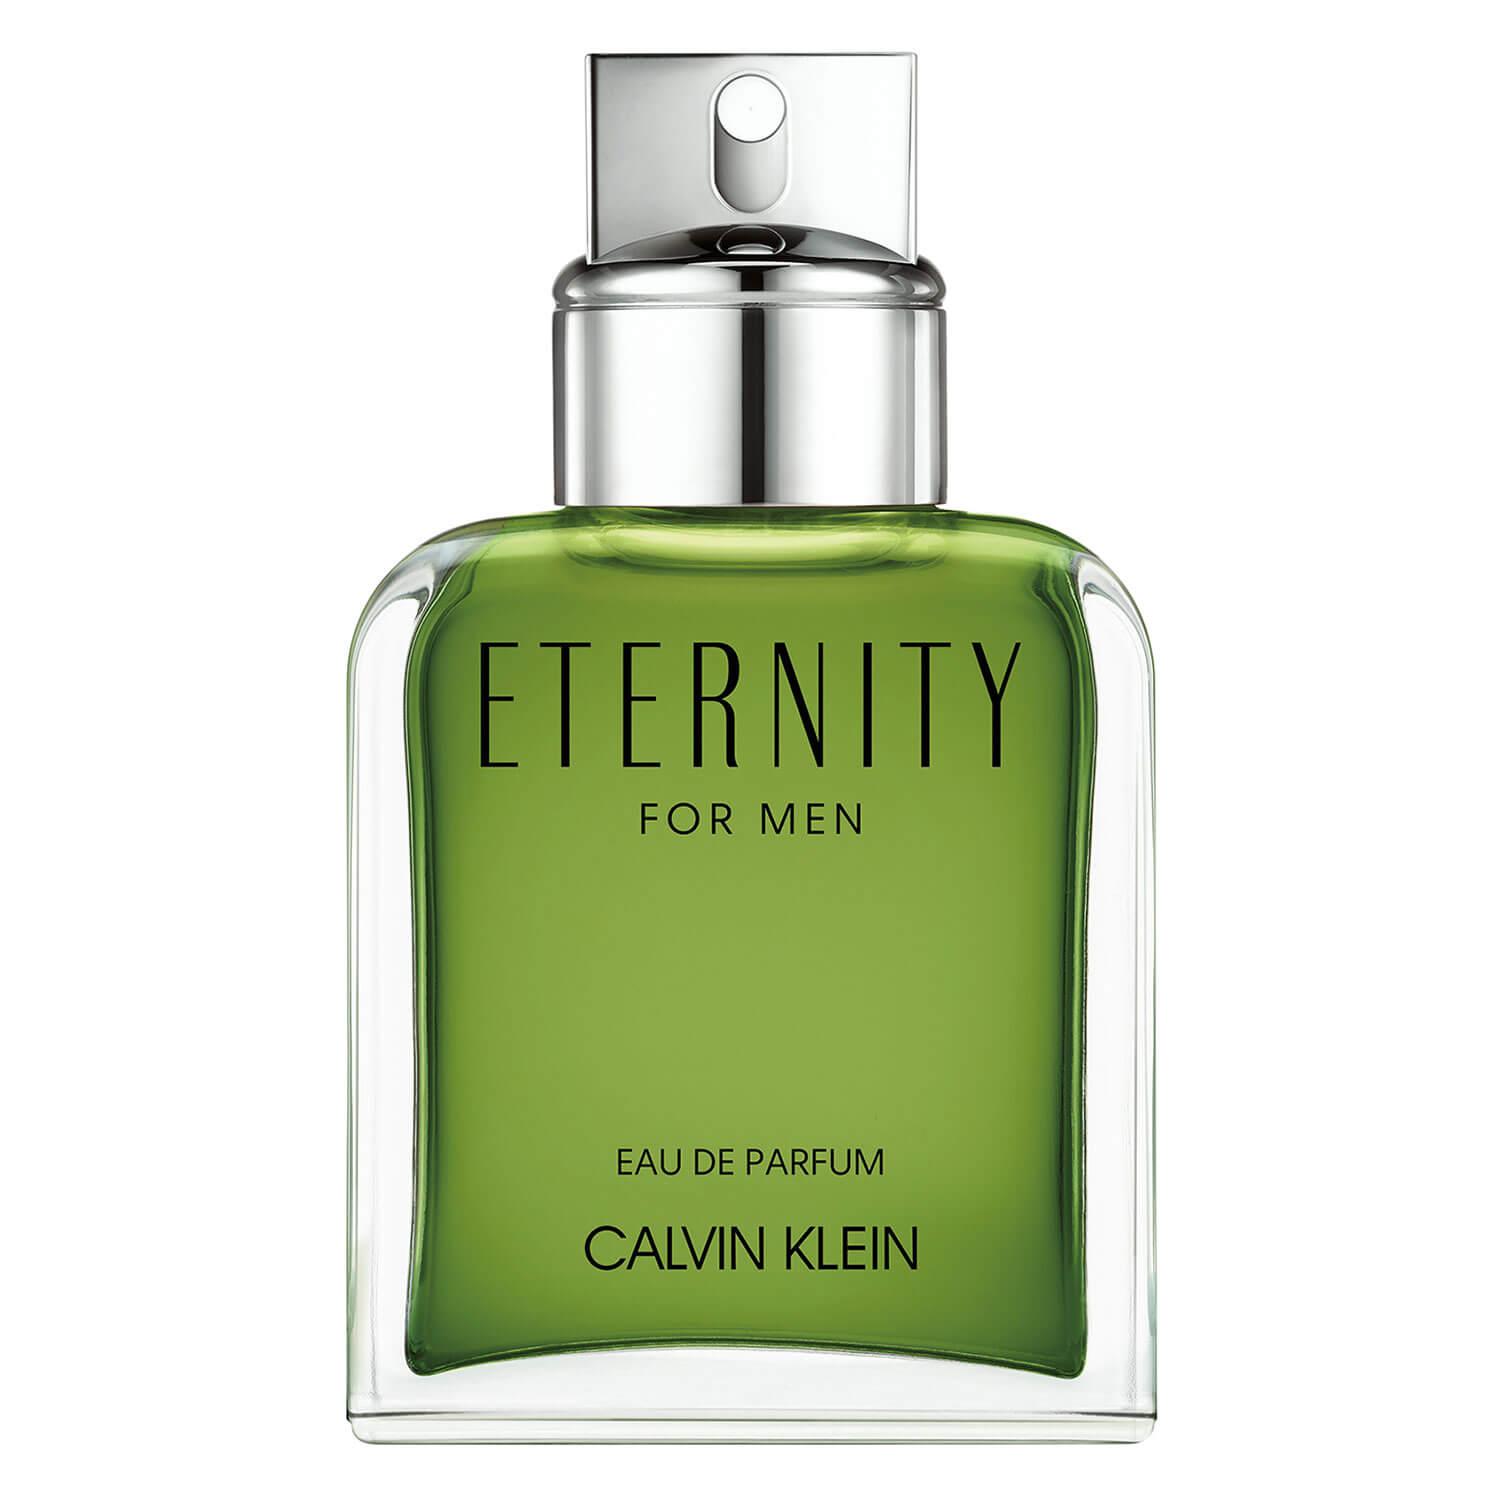 Eternity - Male Eau de Parfum